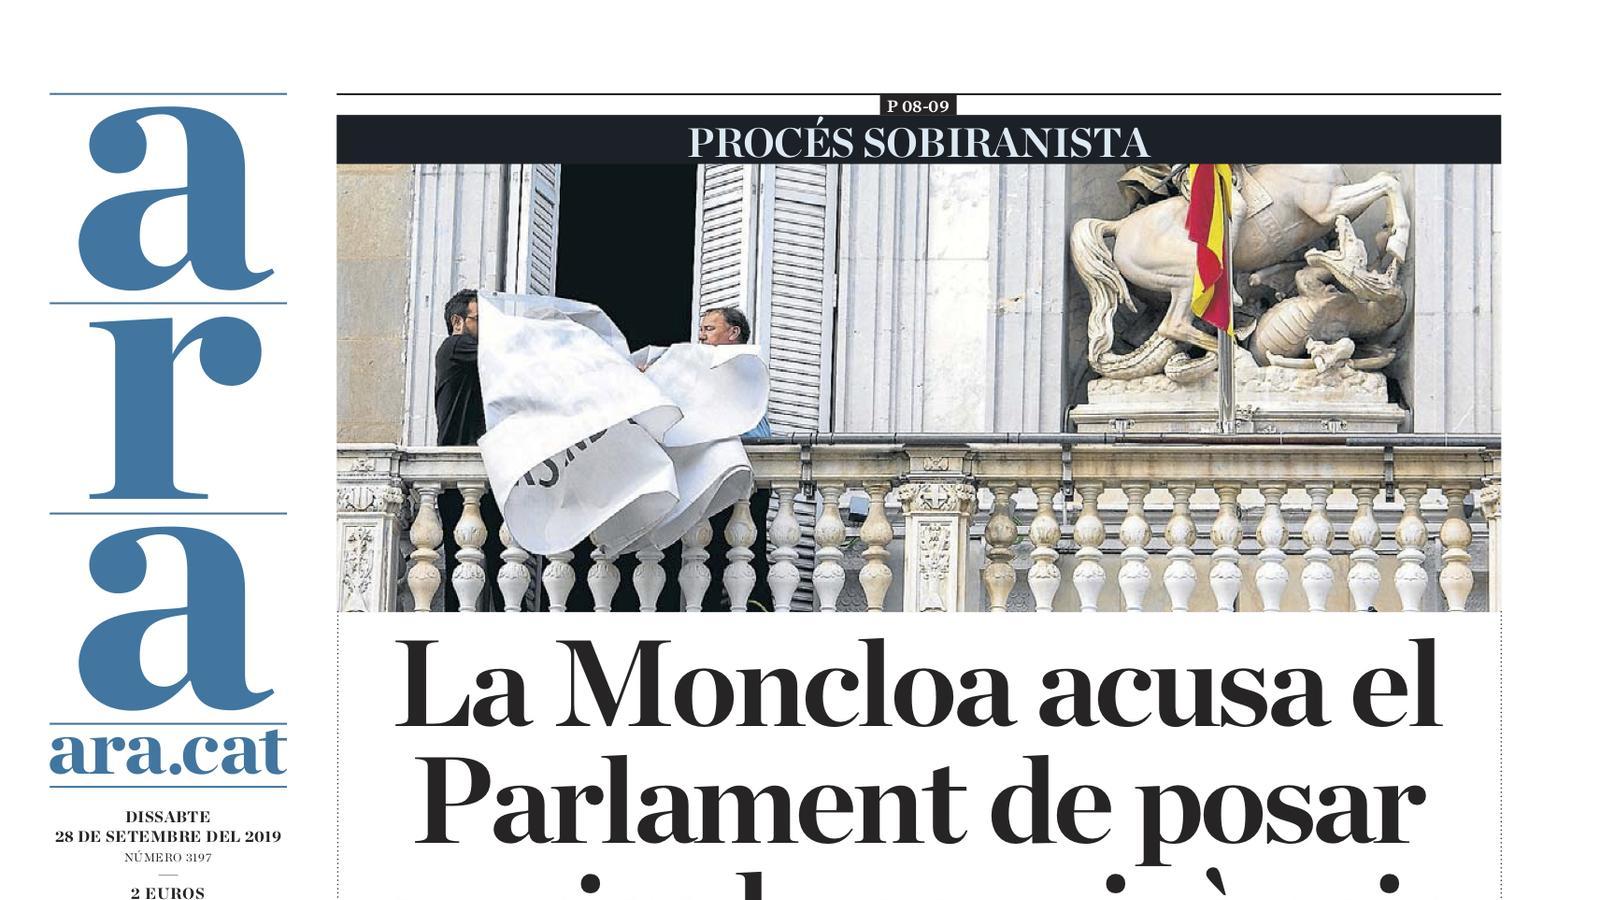 "Moncloa acusa el Parlament de posar en risc la convivència", portada de l'ARA